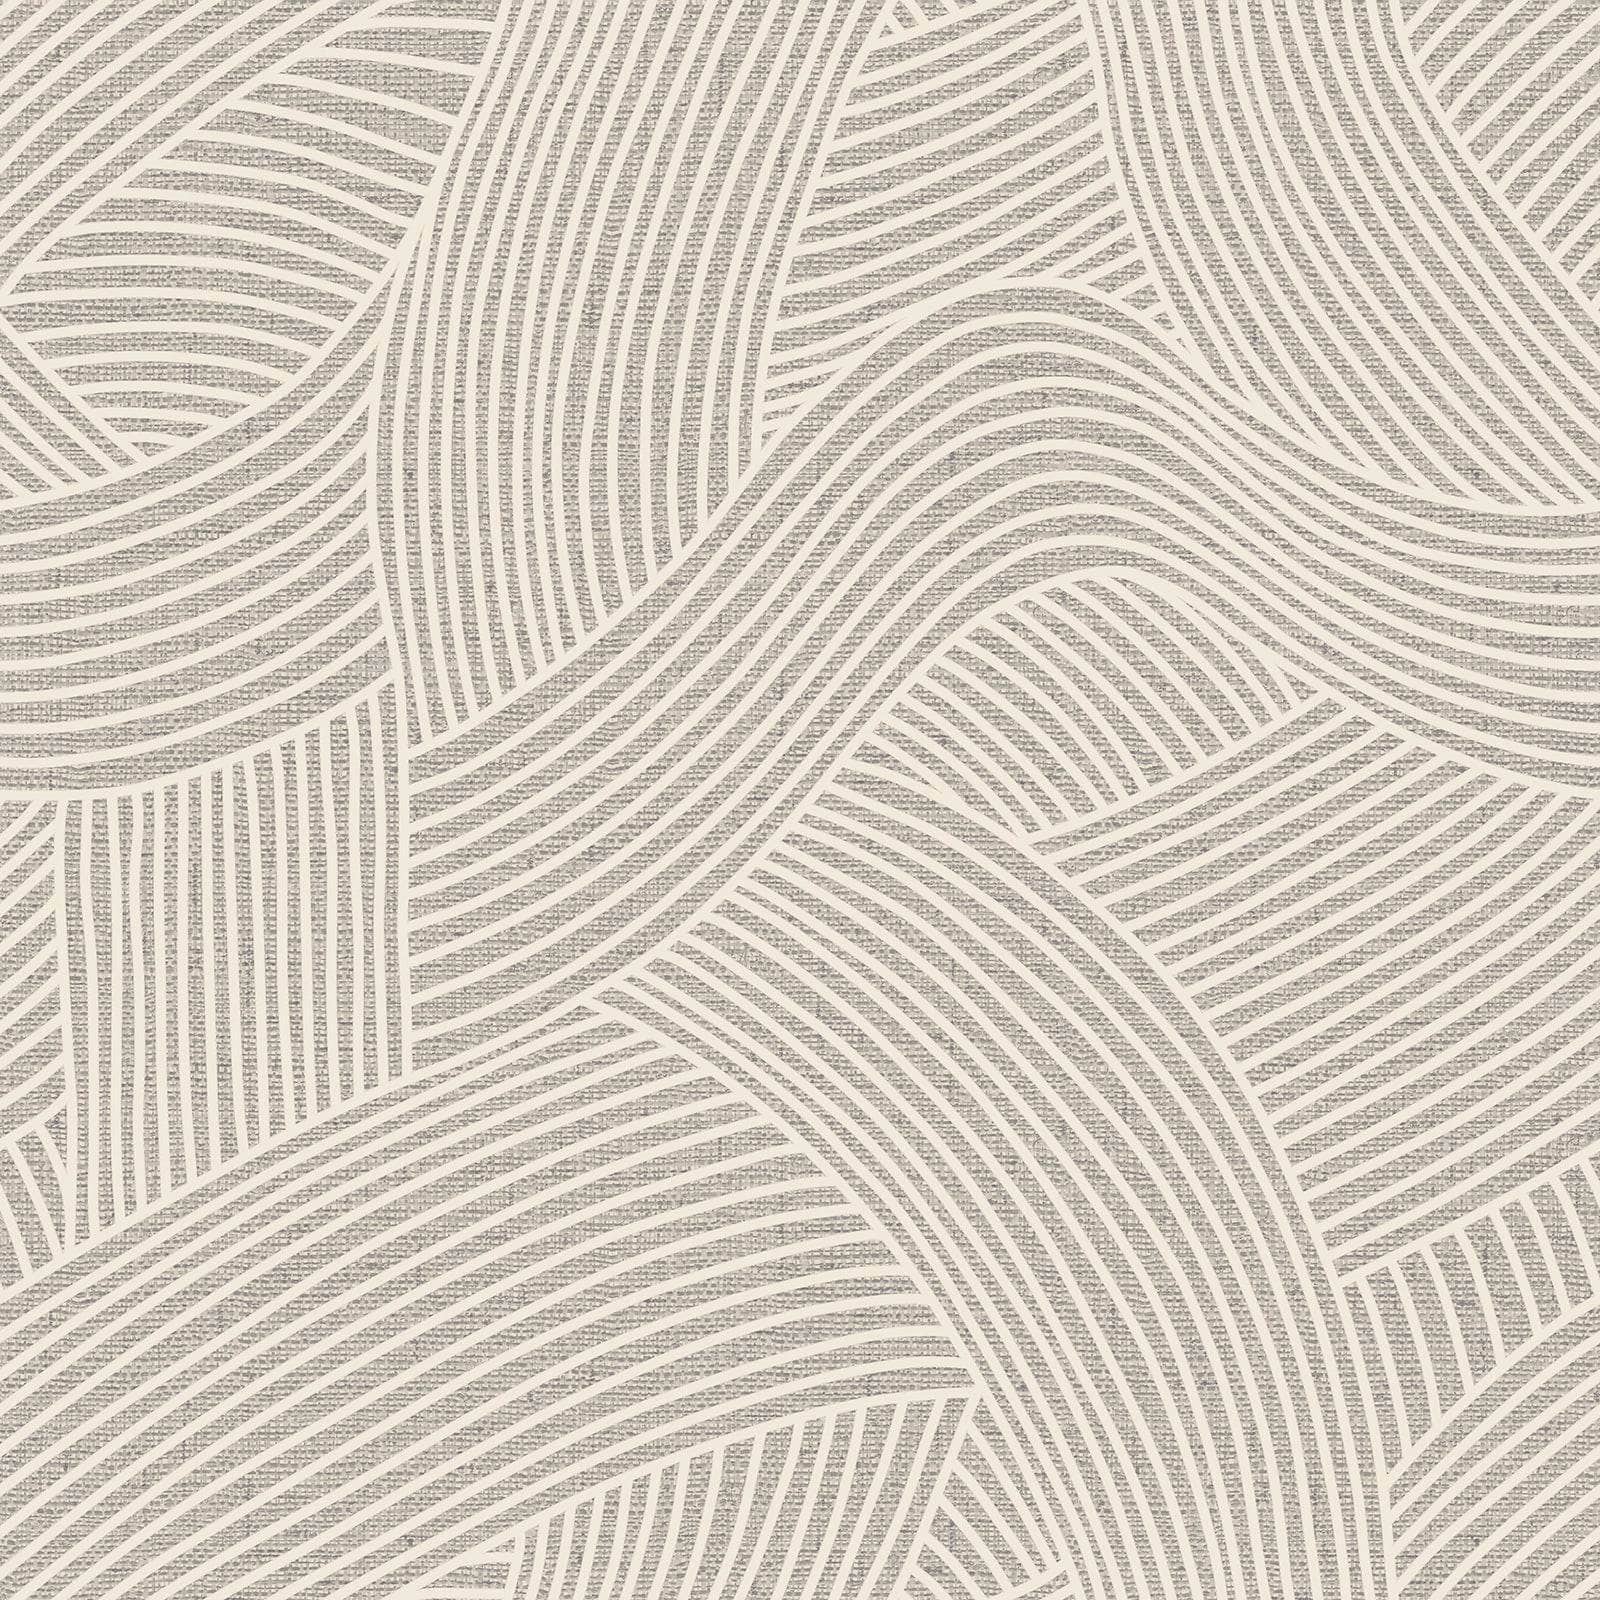 Wallpaper  -  Belgravia Maya Geometric Grey Wallpaper - 1728  -  60009432